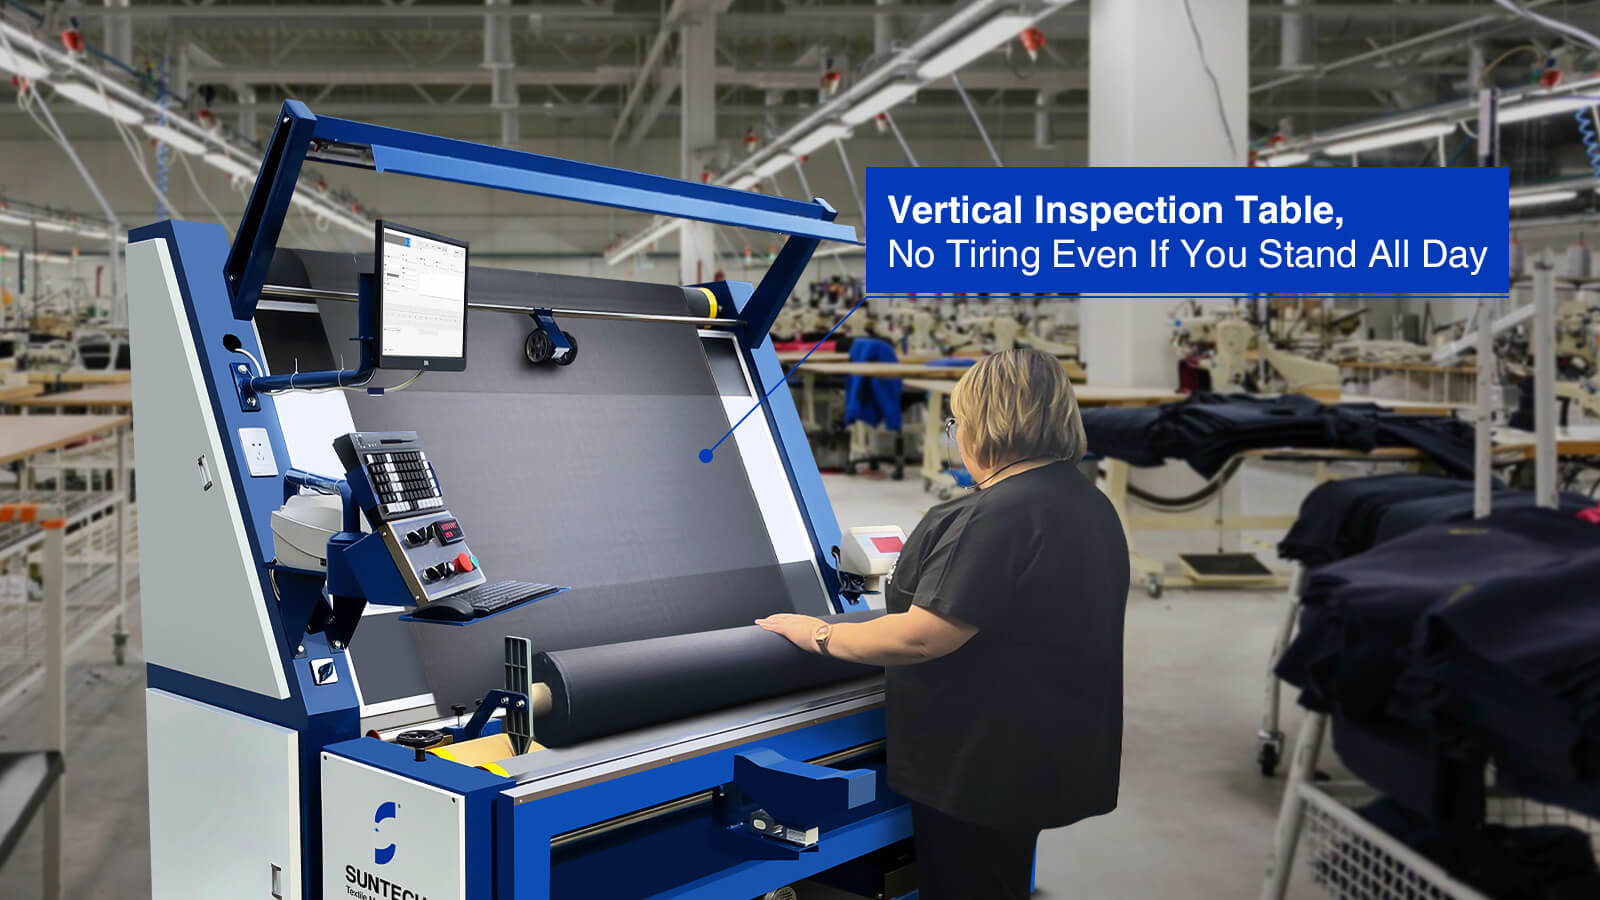 La máquina de inspección de telas tejidas tiene una mesa de inspección vertical